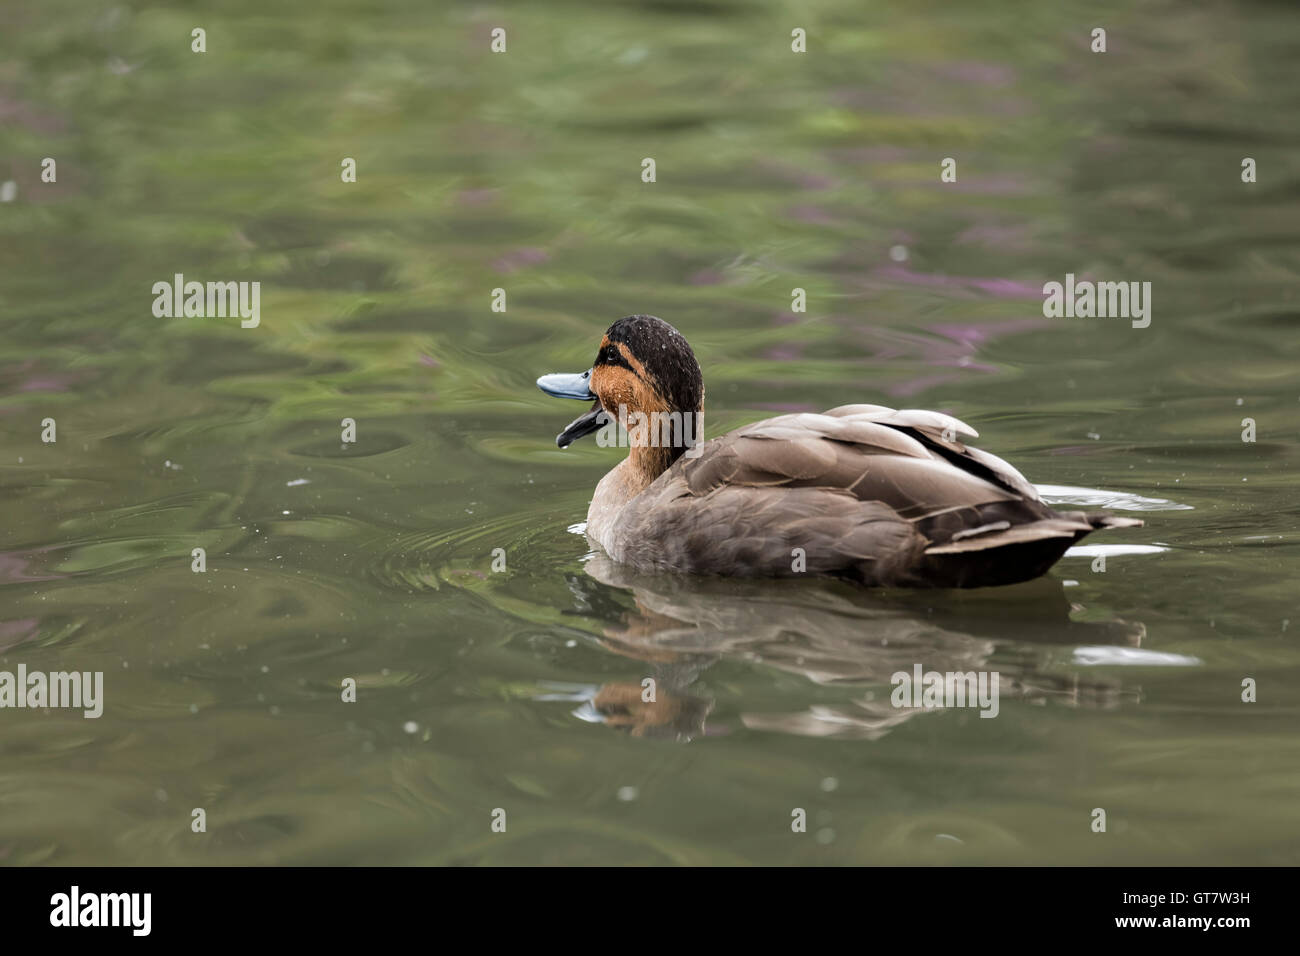 Helle und dunkle braune Leitung Ente mit seinem breiten Schnabel öffnen Schwimmen von der Kamera entfernt. Reflexionen in isolierten Teich Hintergrund Stockfoto